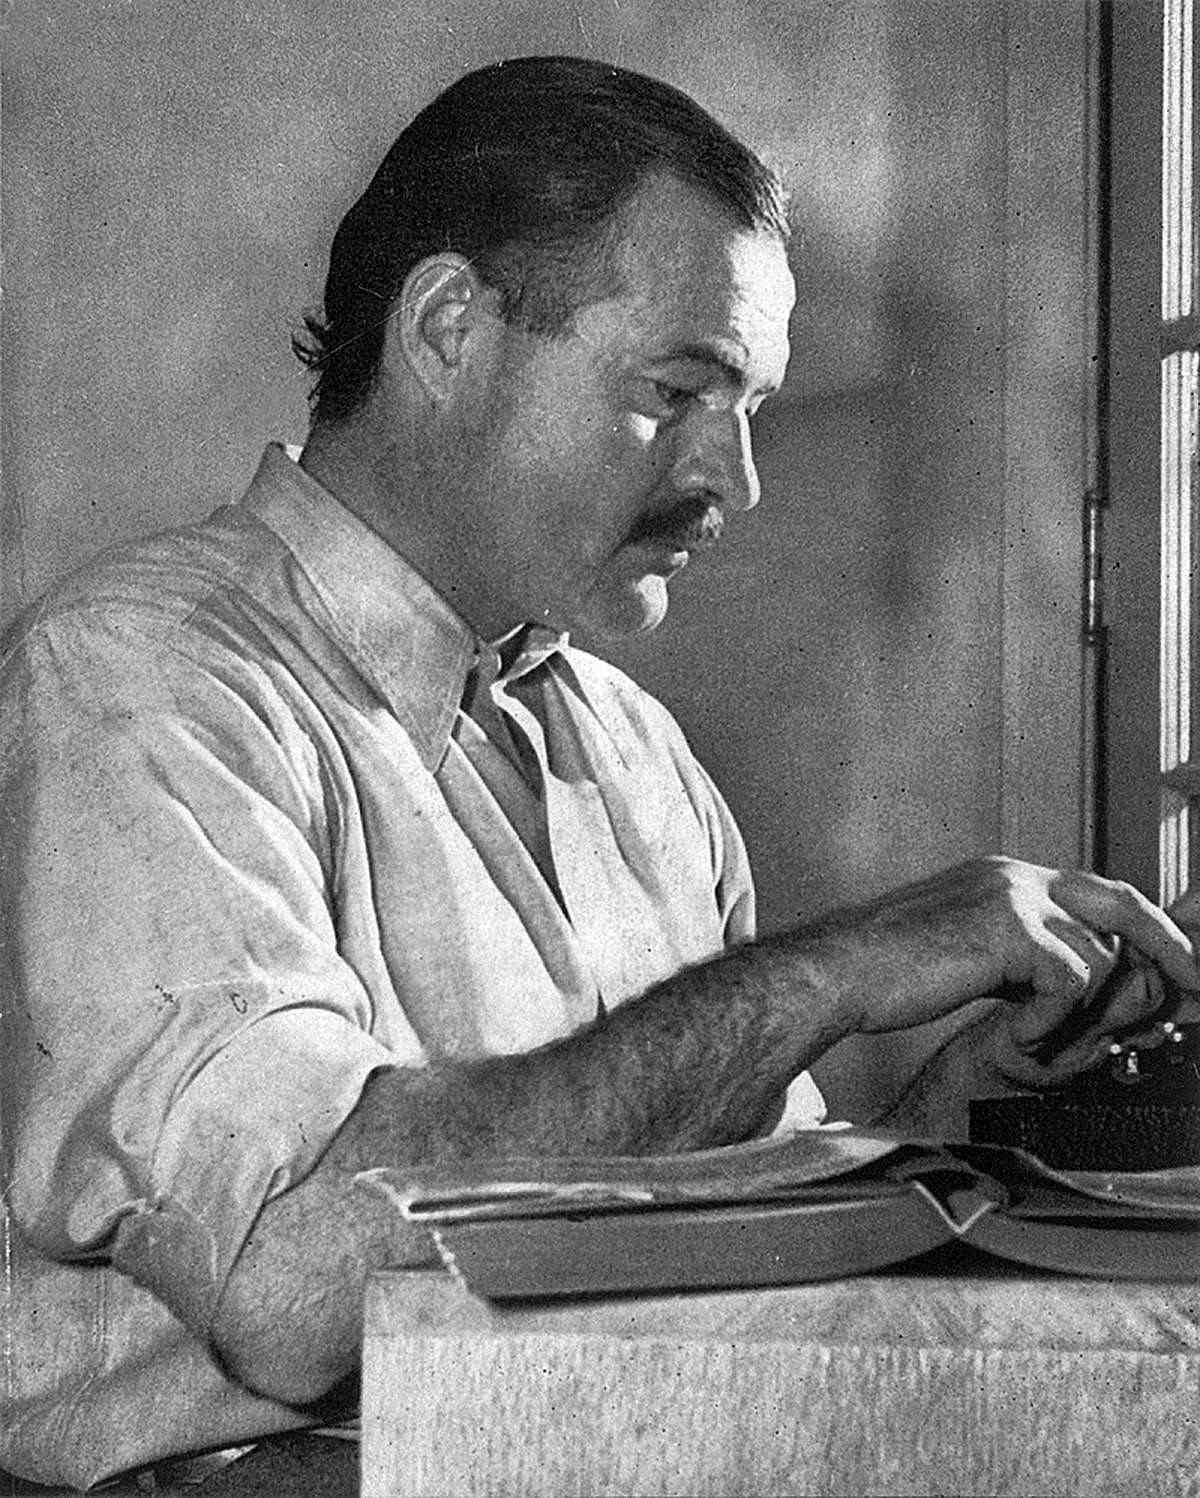 Hemingway at his Desk